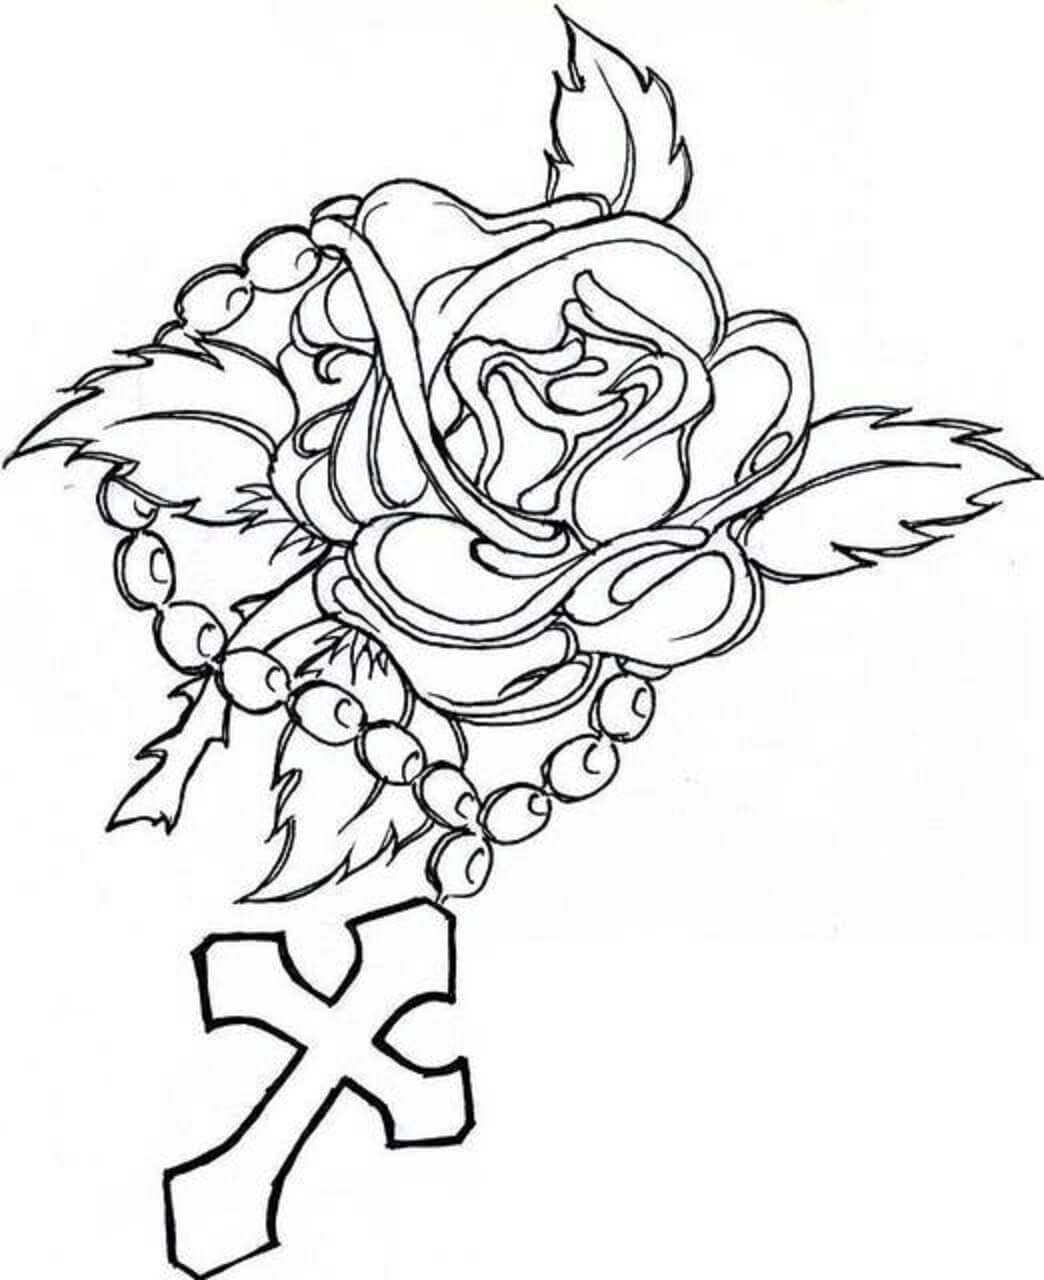 Croix et Roses coloring page